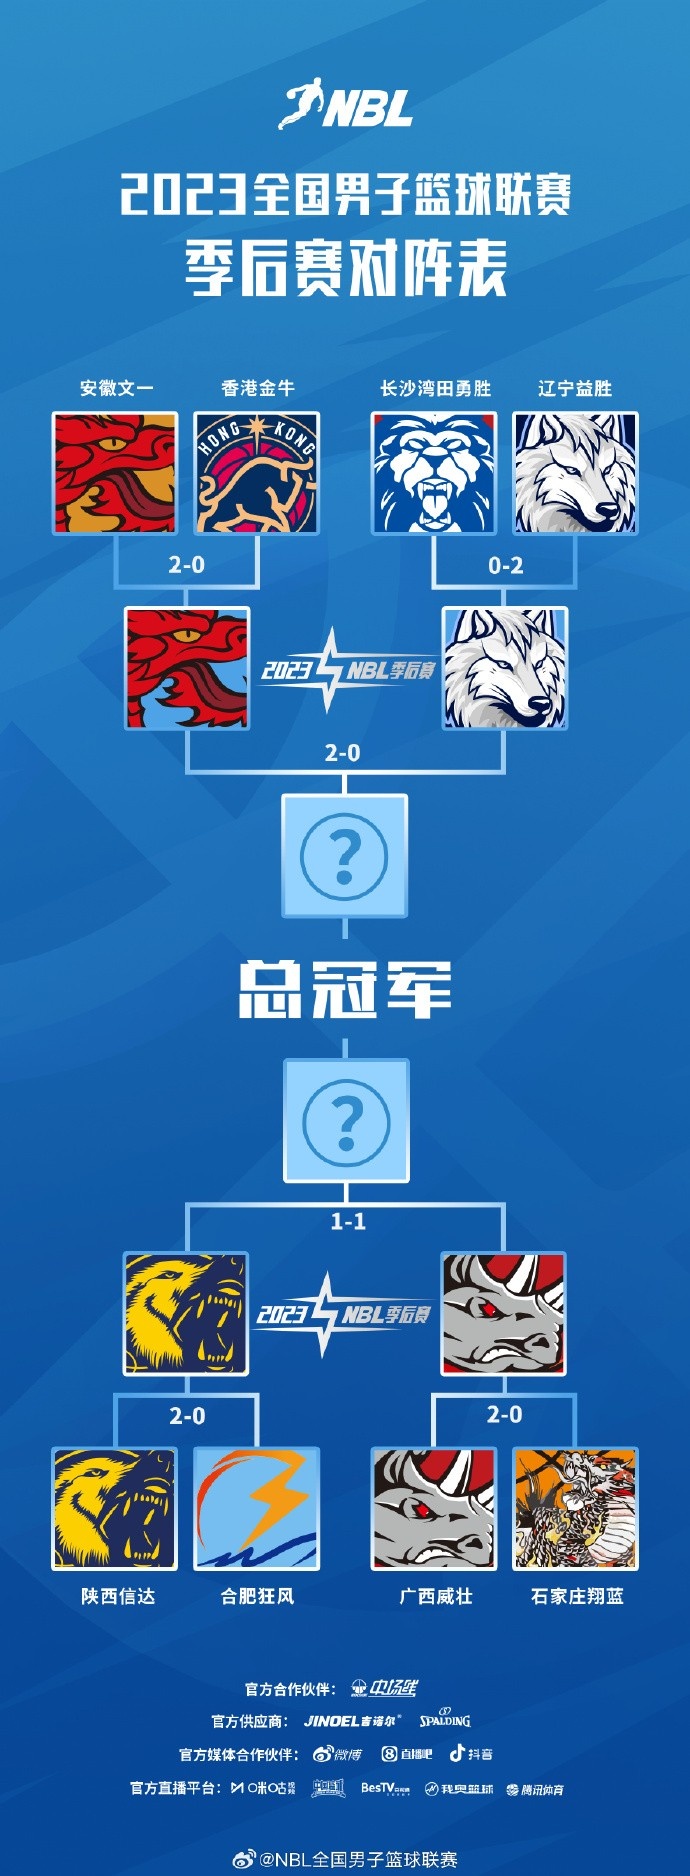 NBL季后赛半决赛G3将于9月13日及14日晚进行广西陕西争赛点